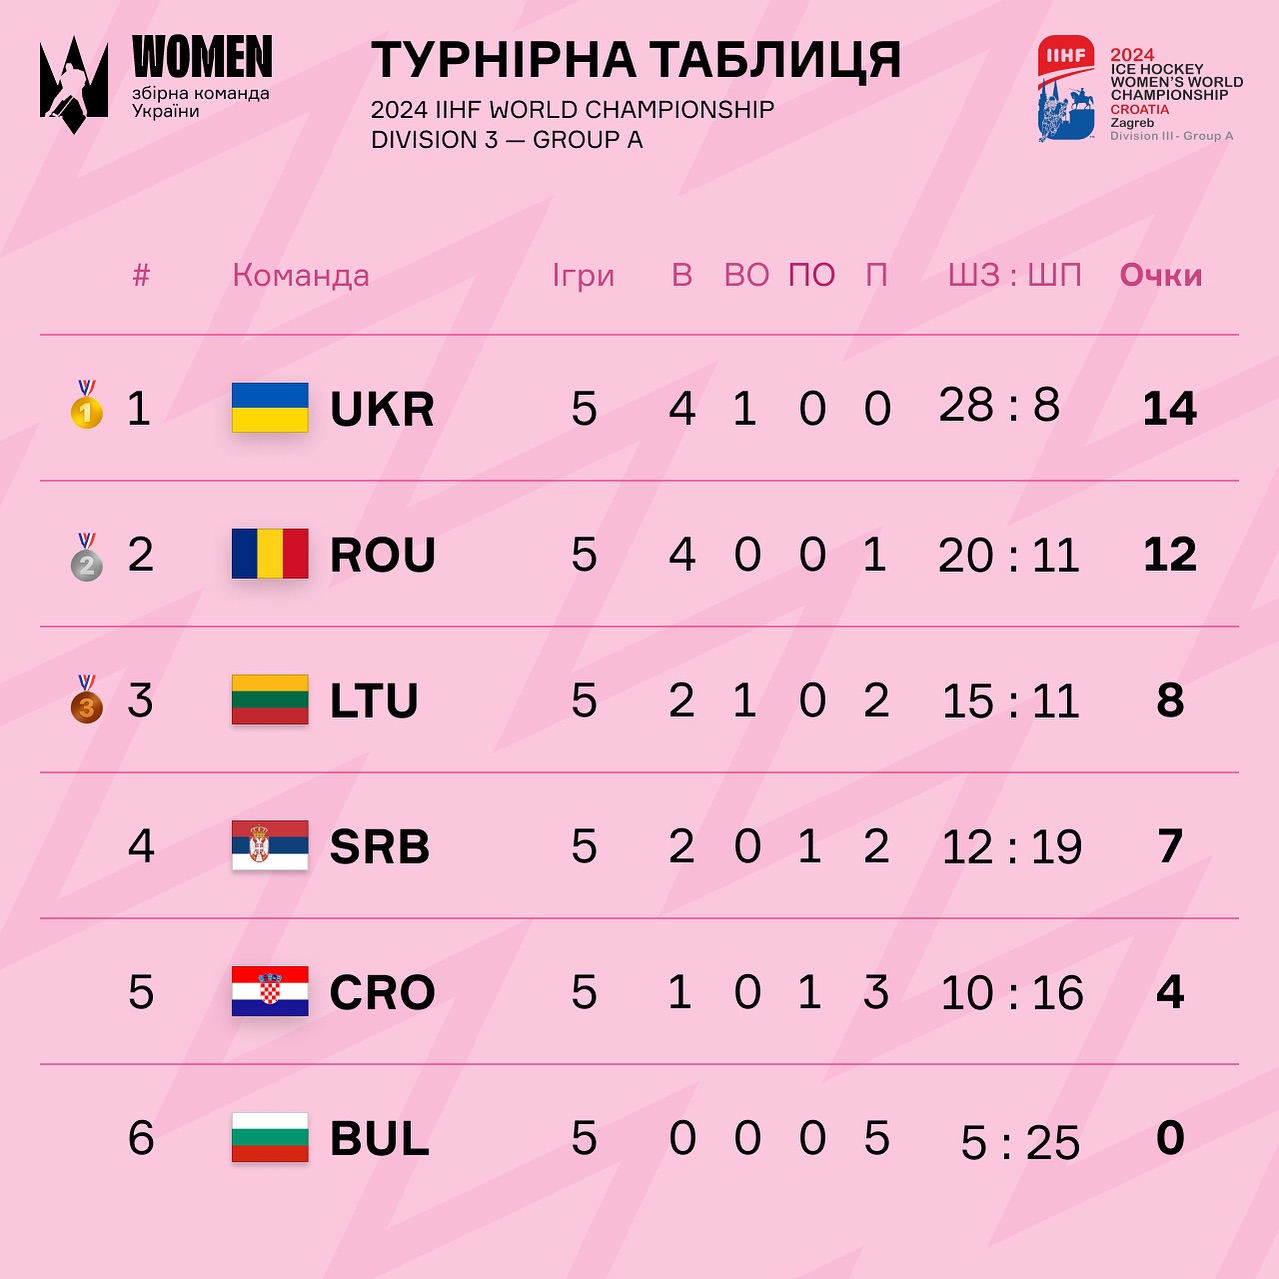 Женская сборная Украины по хоккею победила на чемпионате мира